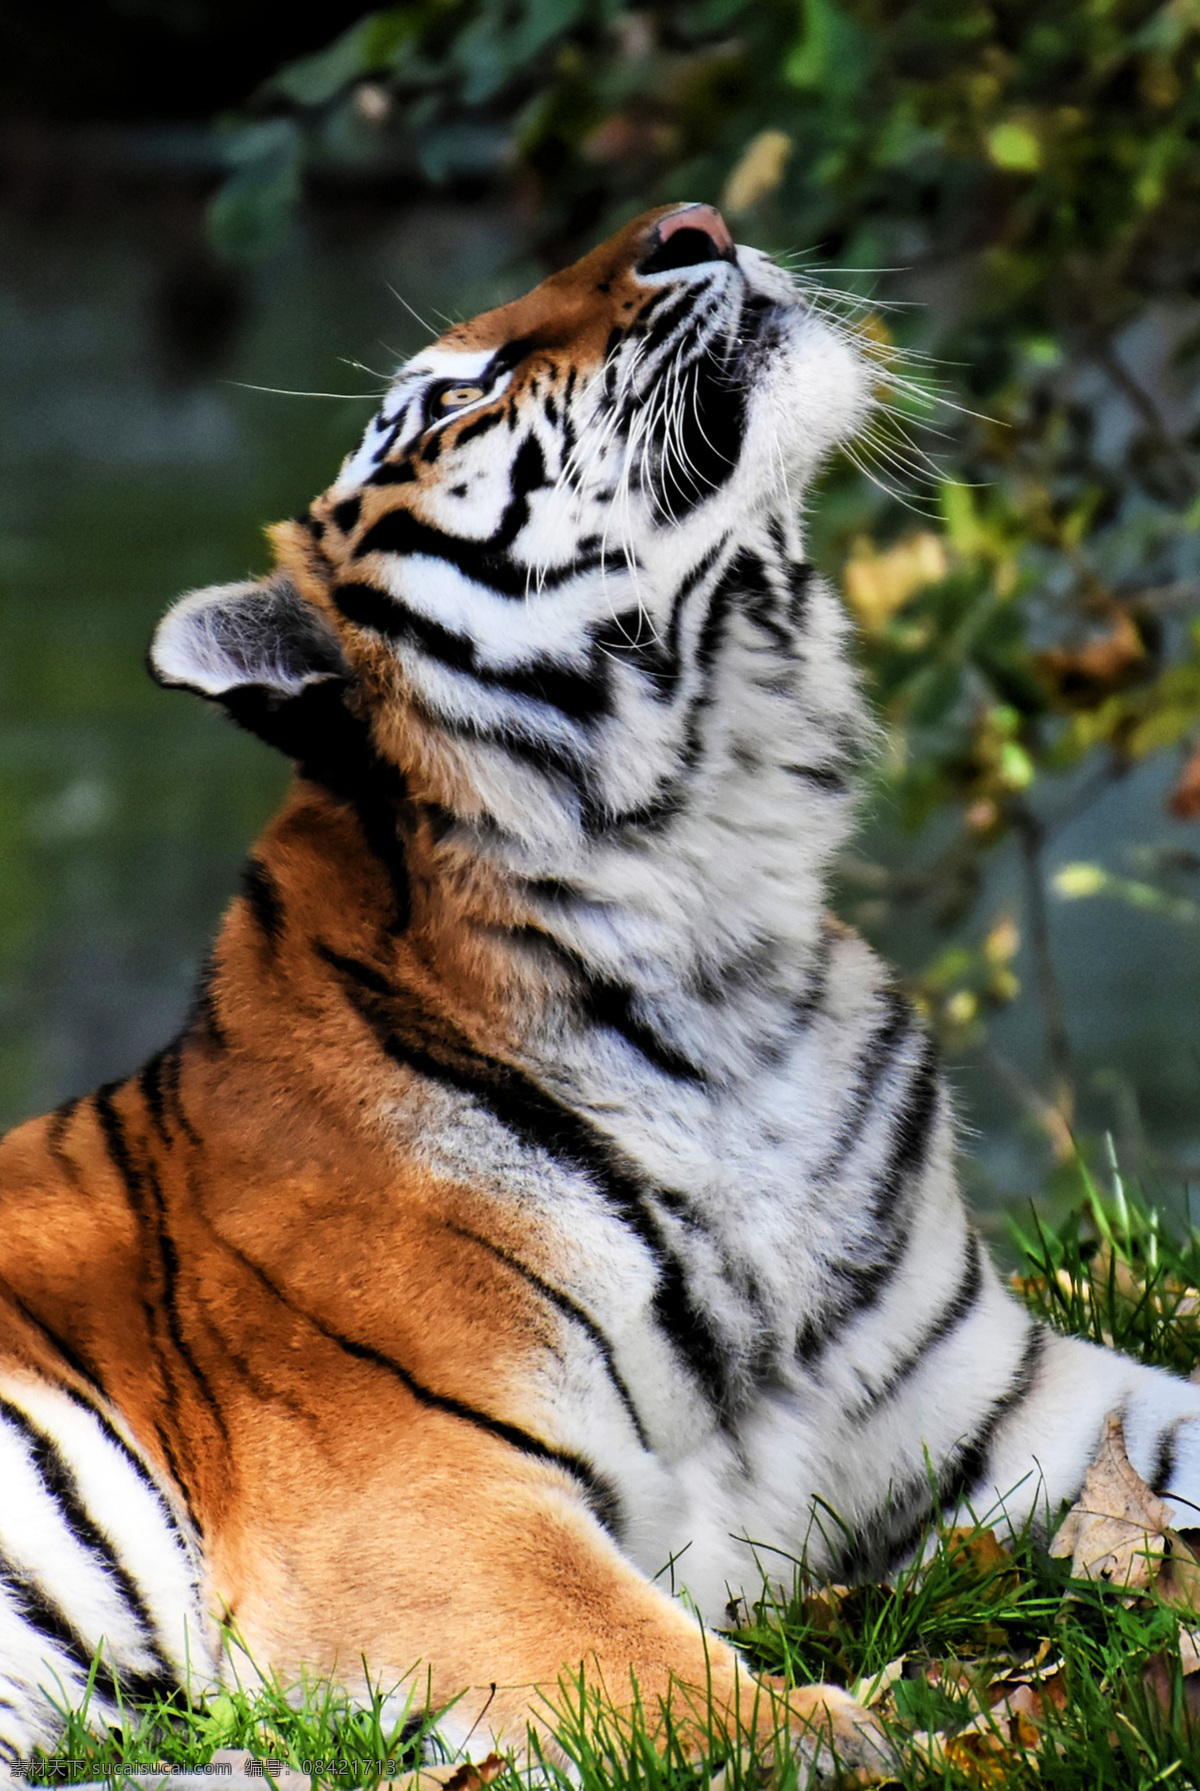 老虎 panthera tigris 猫科动物 tiger 哺乳动物 西伯利亚虎 东北虎 华南虎 巴厘虎 印度支那虎 马来亚虎 爪哇虎 苏门答腊虎 孟加拉虎 里海虎